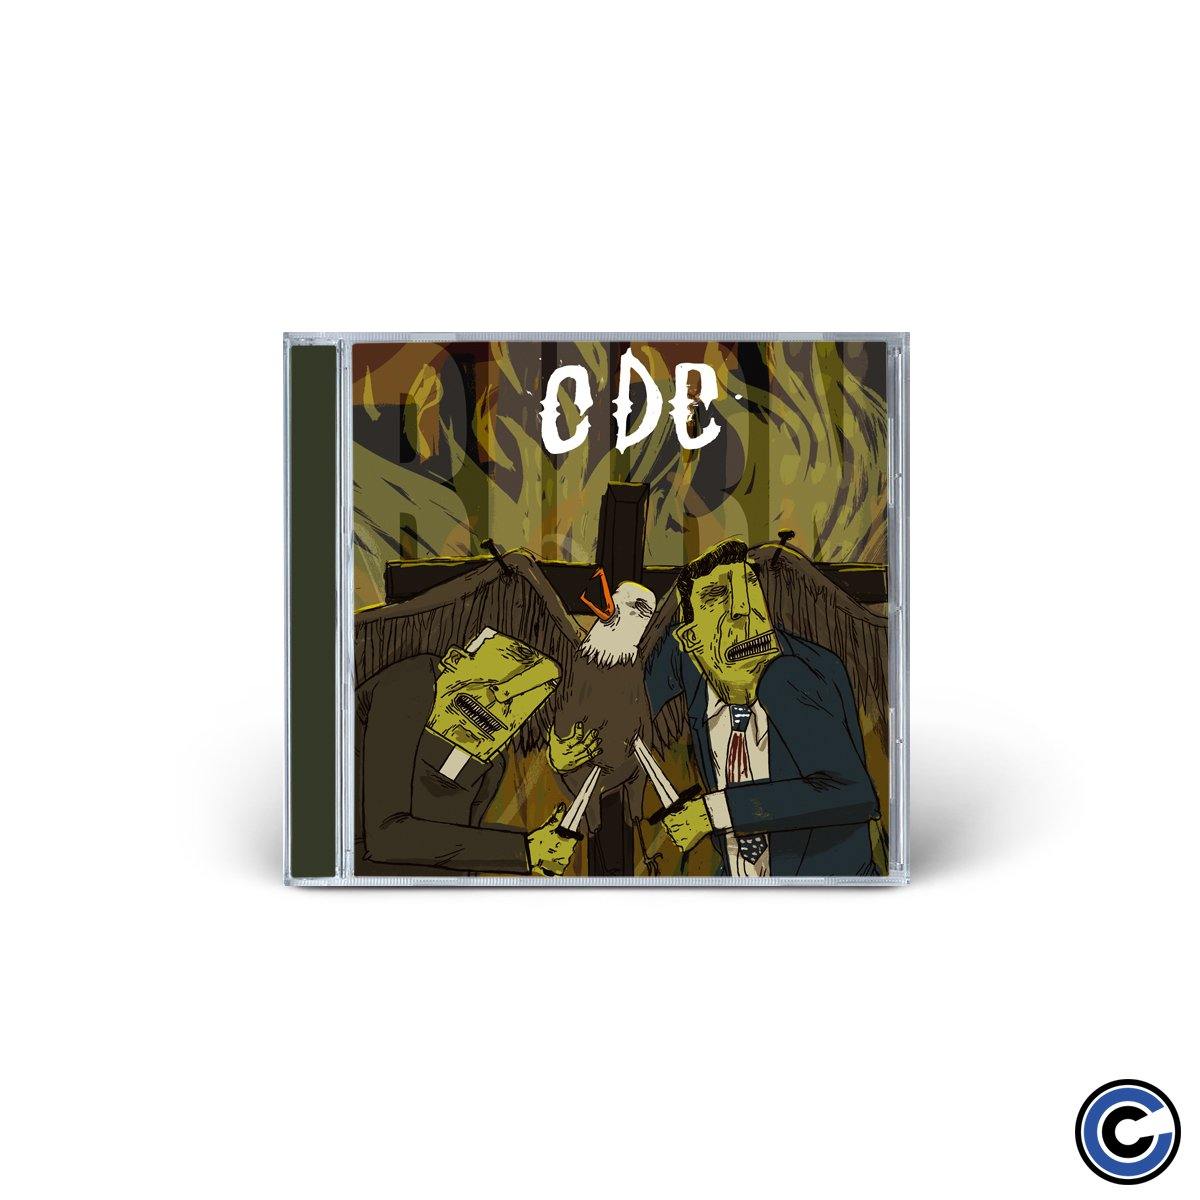 Buy – CDC "Burn" CD – Band & Music Merch – Cold Cuts Merch